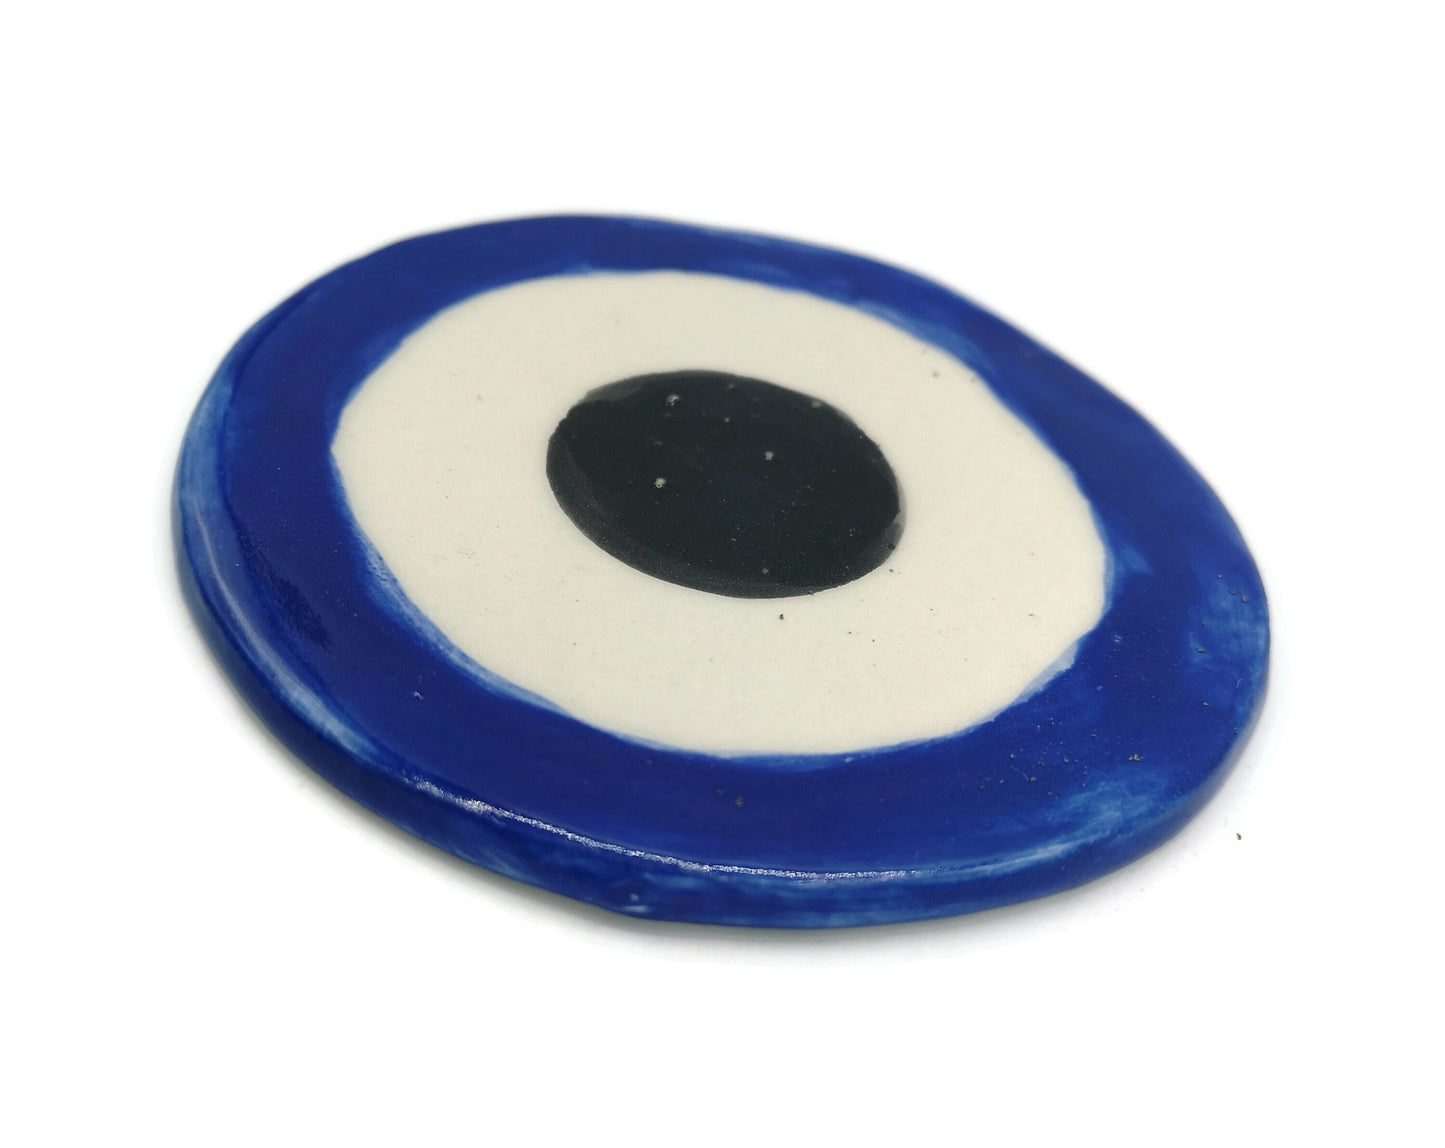 1Pc Handmade Ceramic Blue Evil Eye Coasters For Drinks, Mothers Day Gift For Women, Mom Birthday Gift, Artisan Pottery Best Seller - Ceramica Ana Rafael